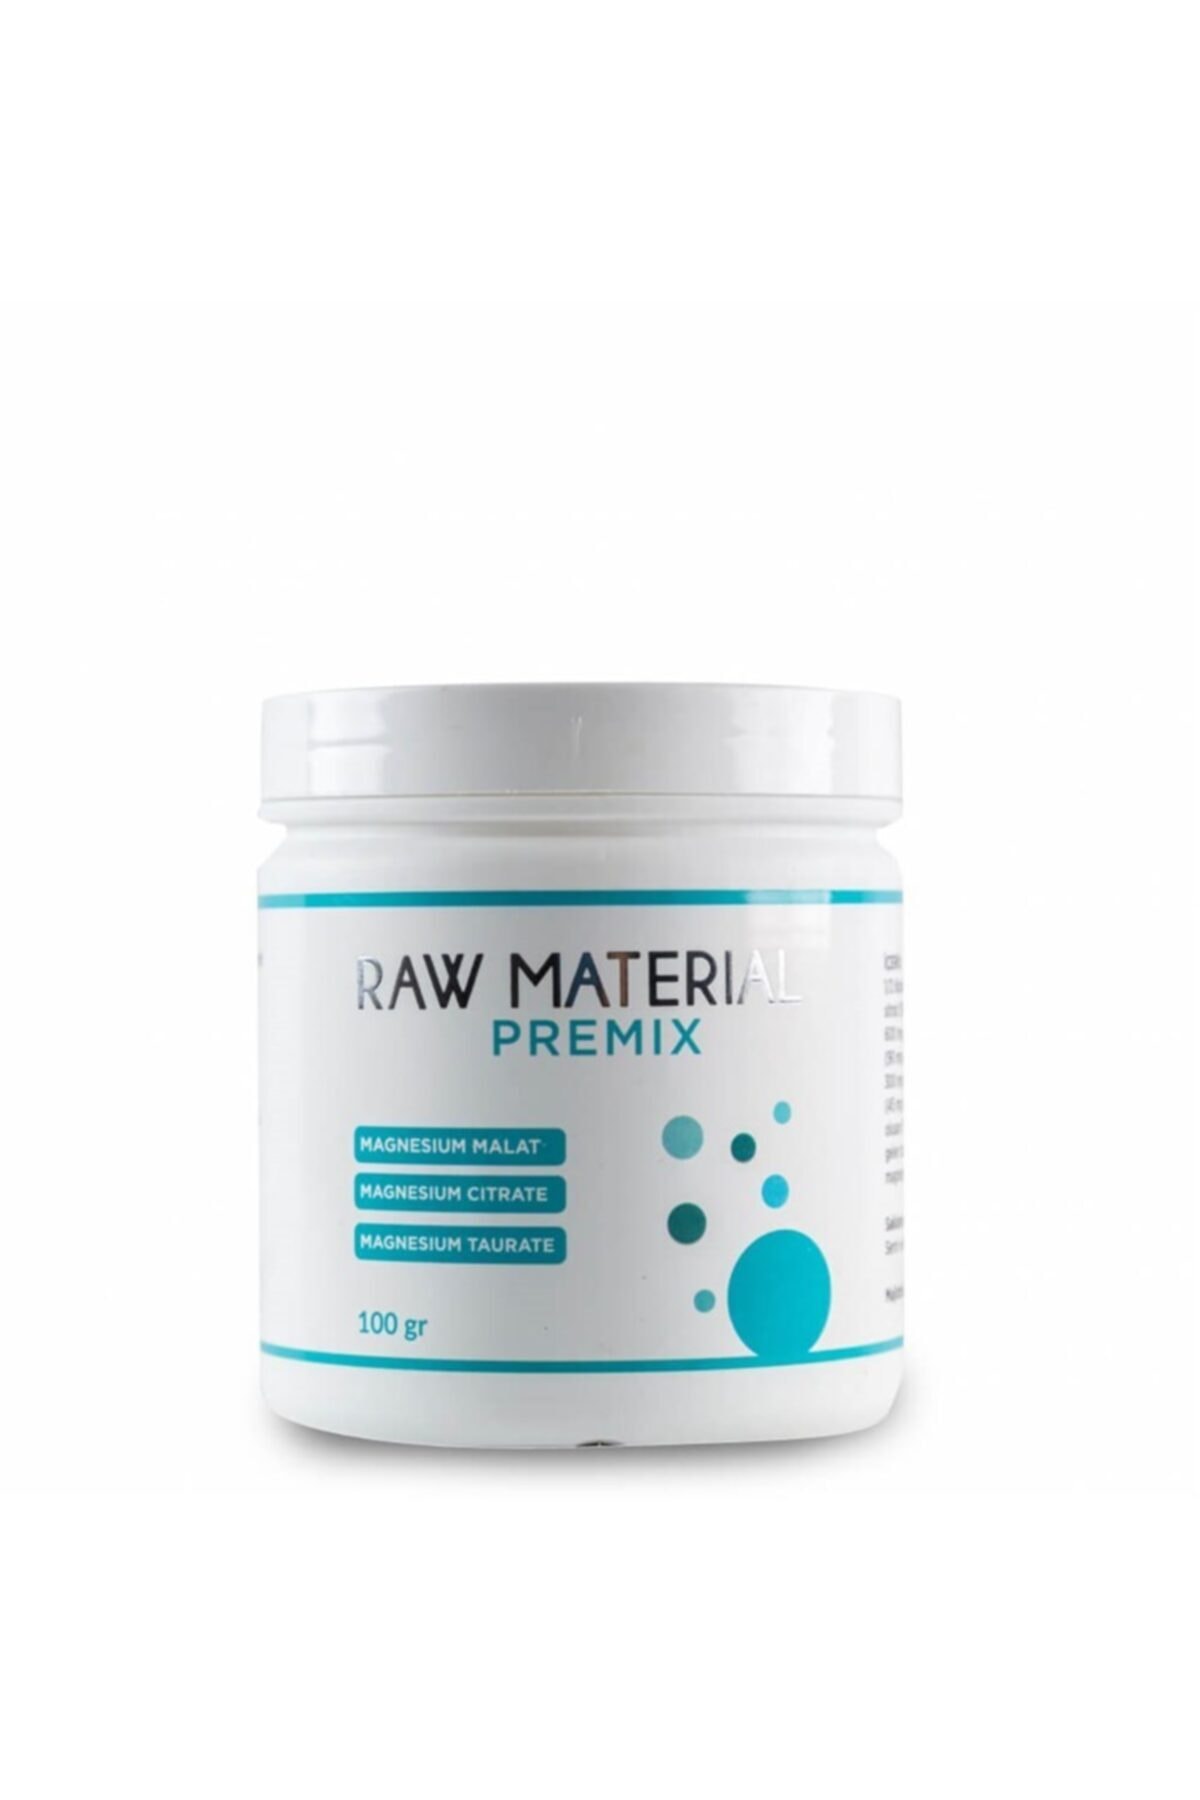 Raw Material Raw Materıal Premıx- Magnesıum Malat- Cıtrate - Taurate